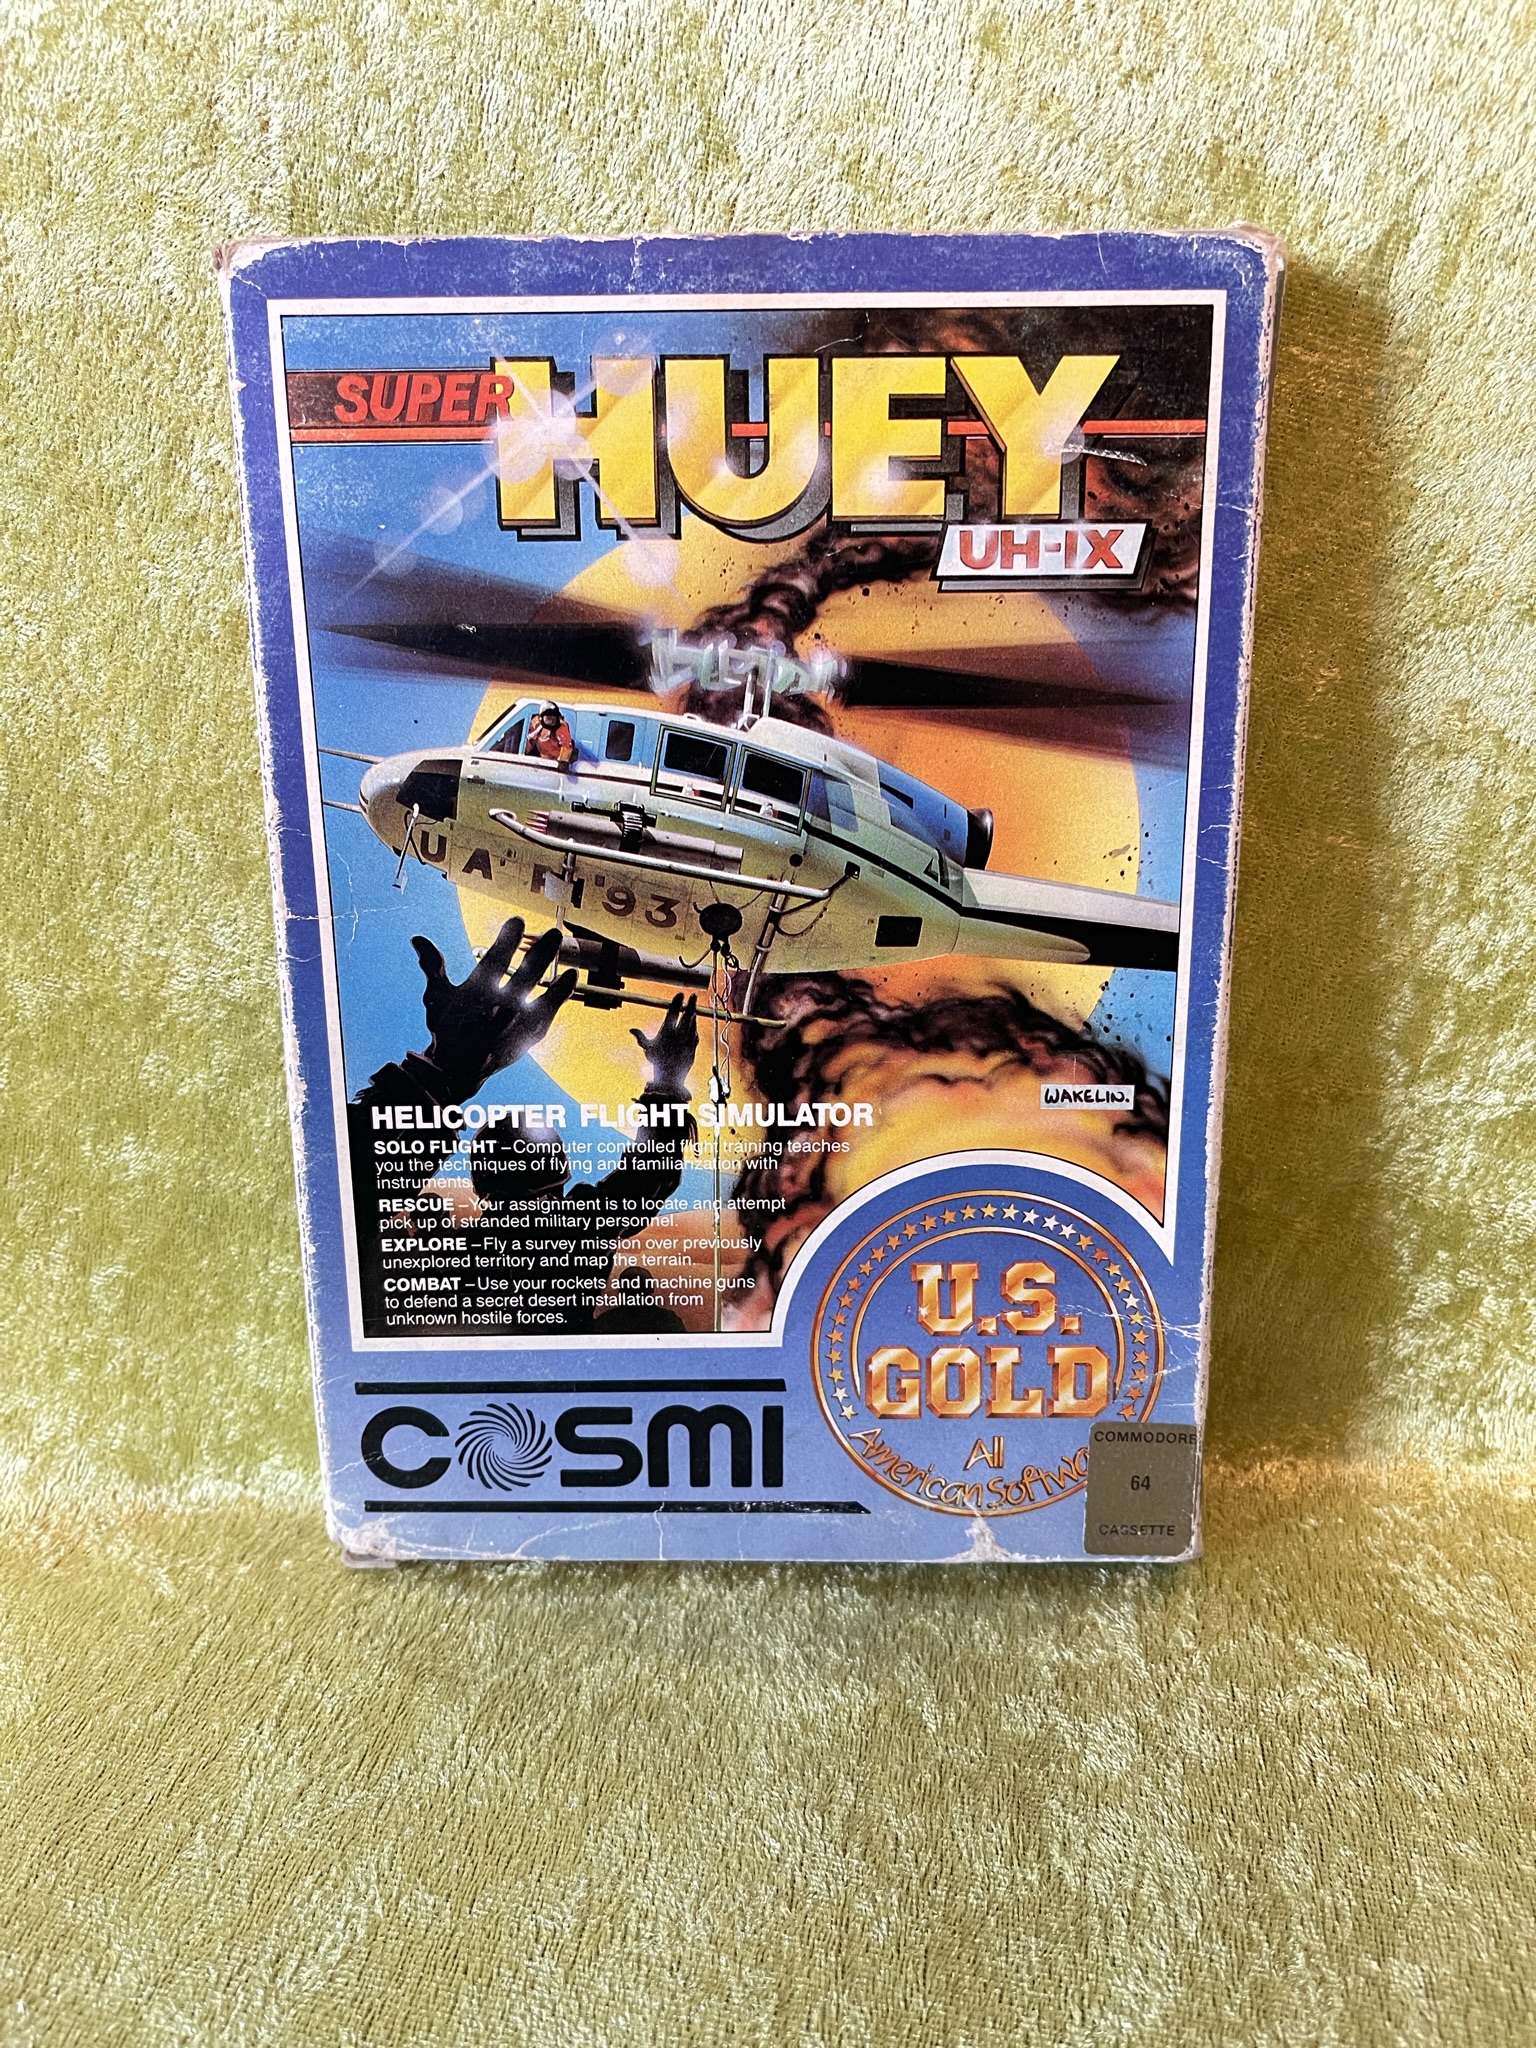 Super Huey UV-IX